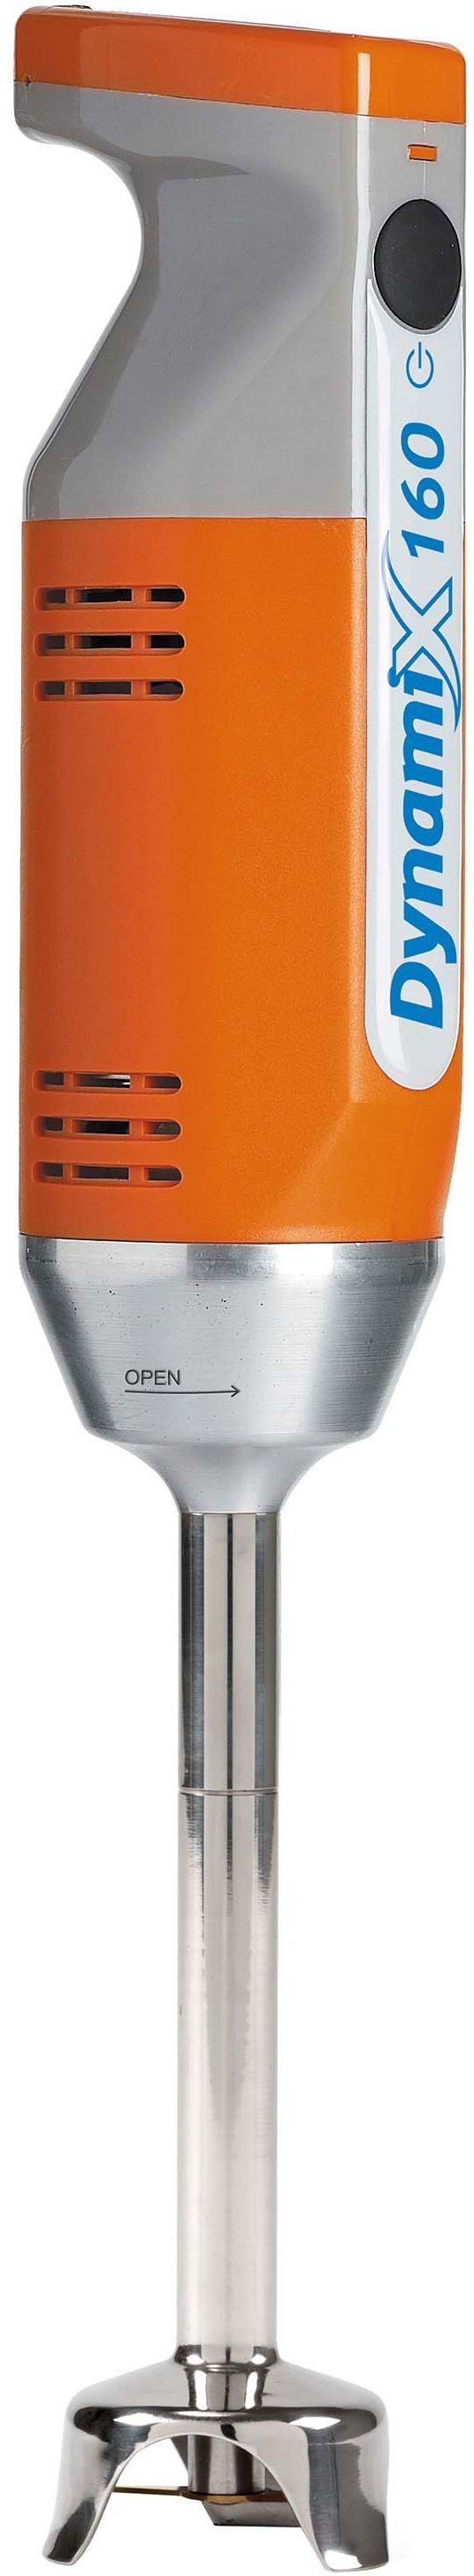 Dynamic Mixers CF001 frullatore 4 L Frullatore ad immersione 220 W  Arancione, Acciaio inossidabile - Dynamic Mixers - Casa e Cucina | IBS